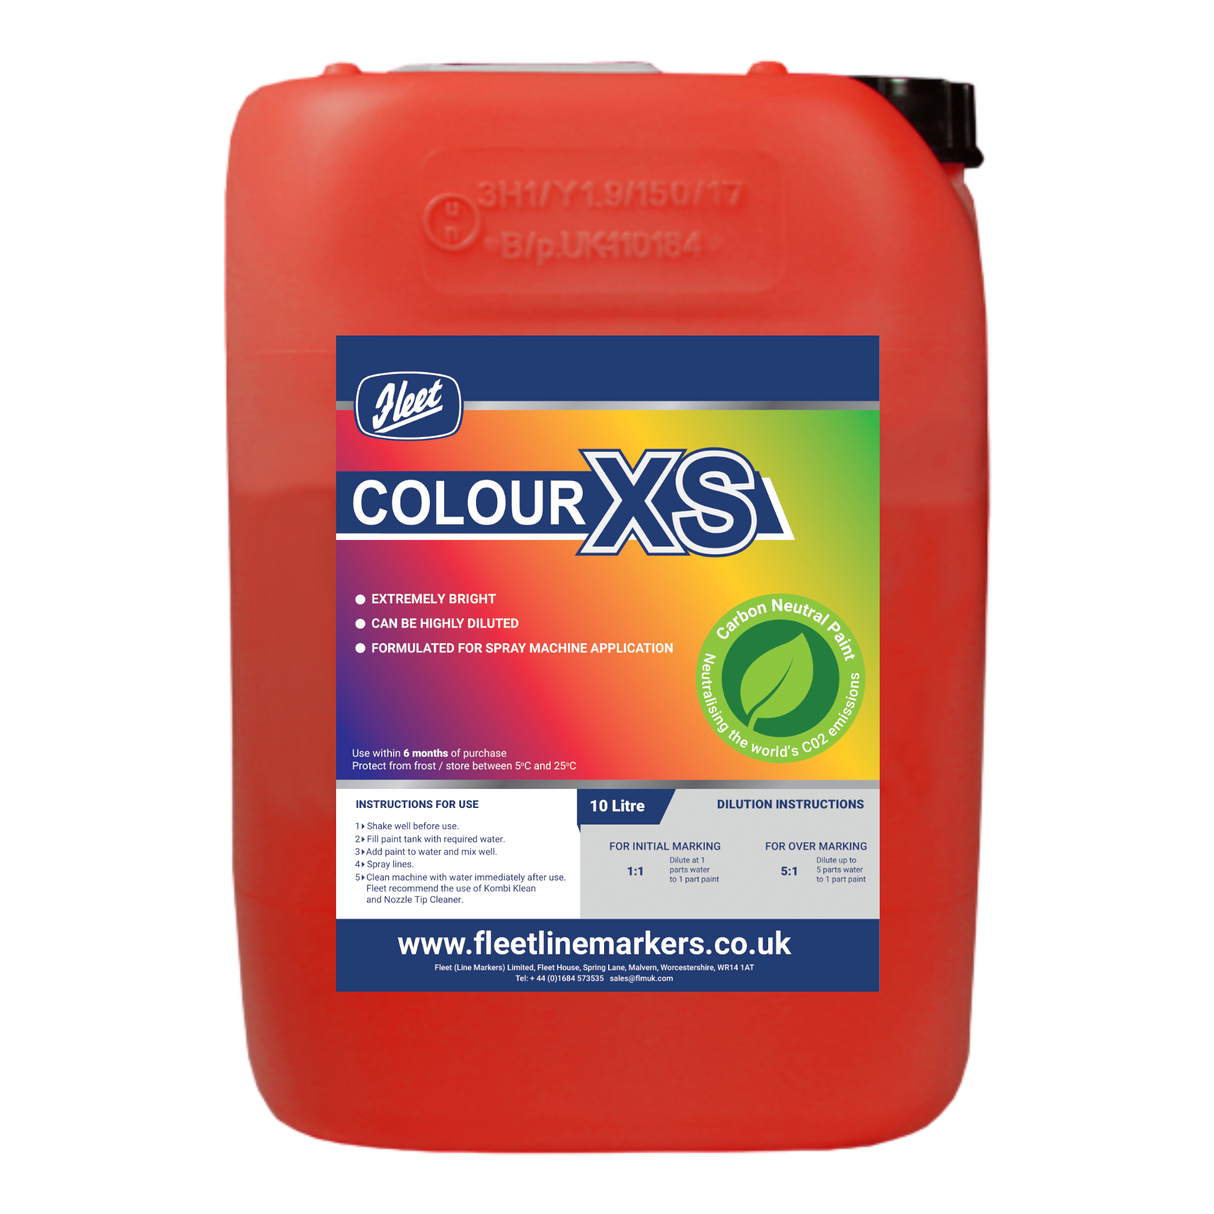 Colour XS Range 10 litres